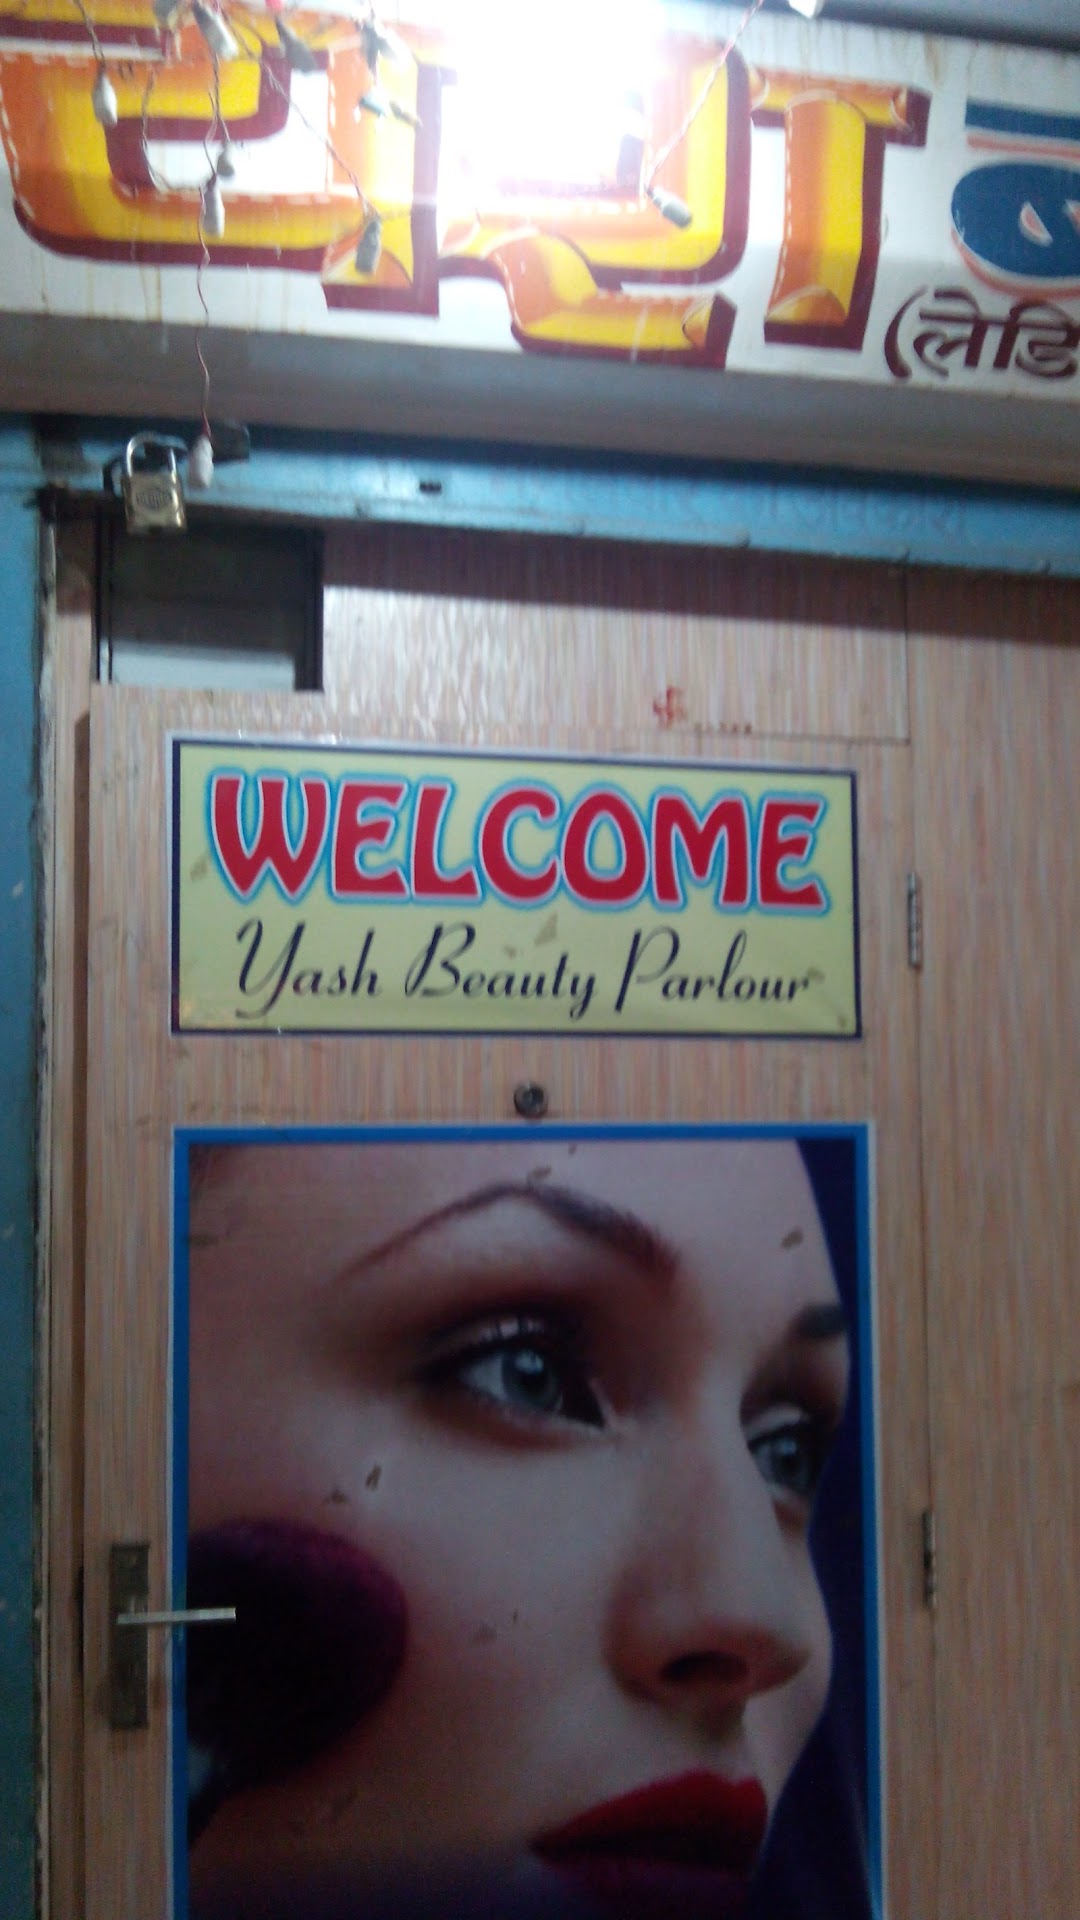 Yash Beauty Parlour